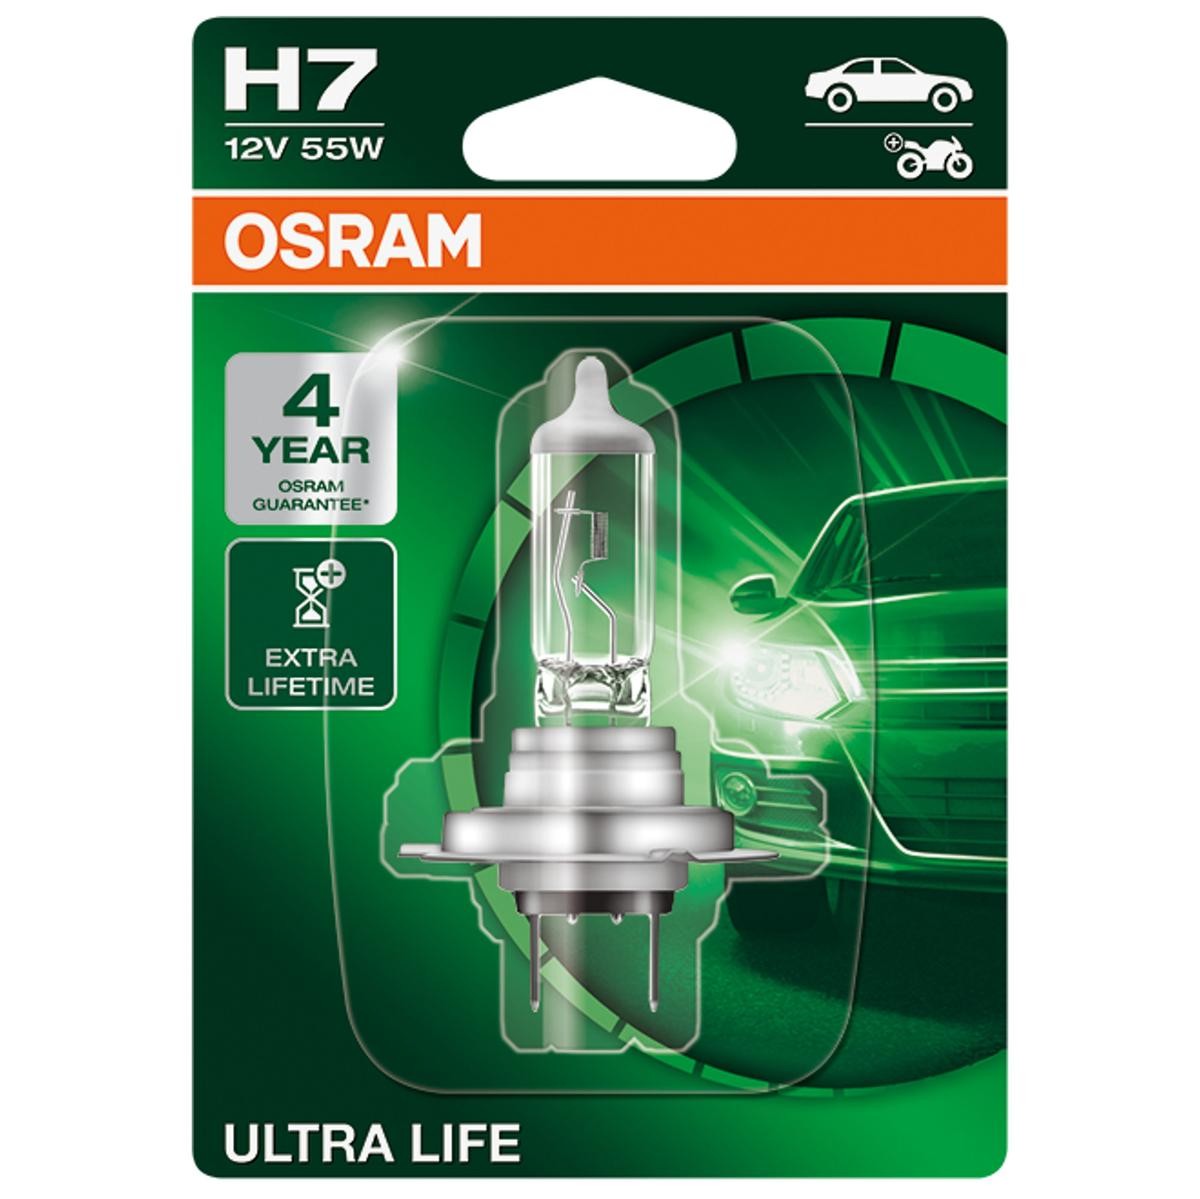 64210ULT-01B OSRAM ULTRA LIFE H7 12V 55W 3200K Halogène Ampoule, projecteur  longue portée